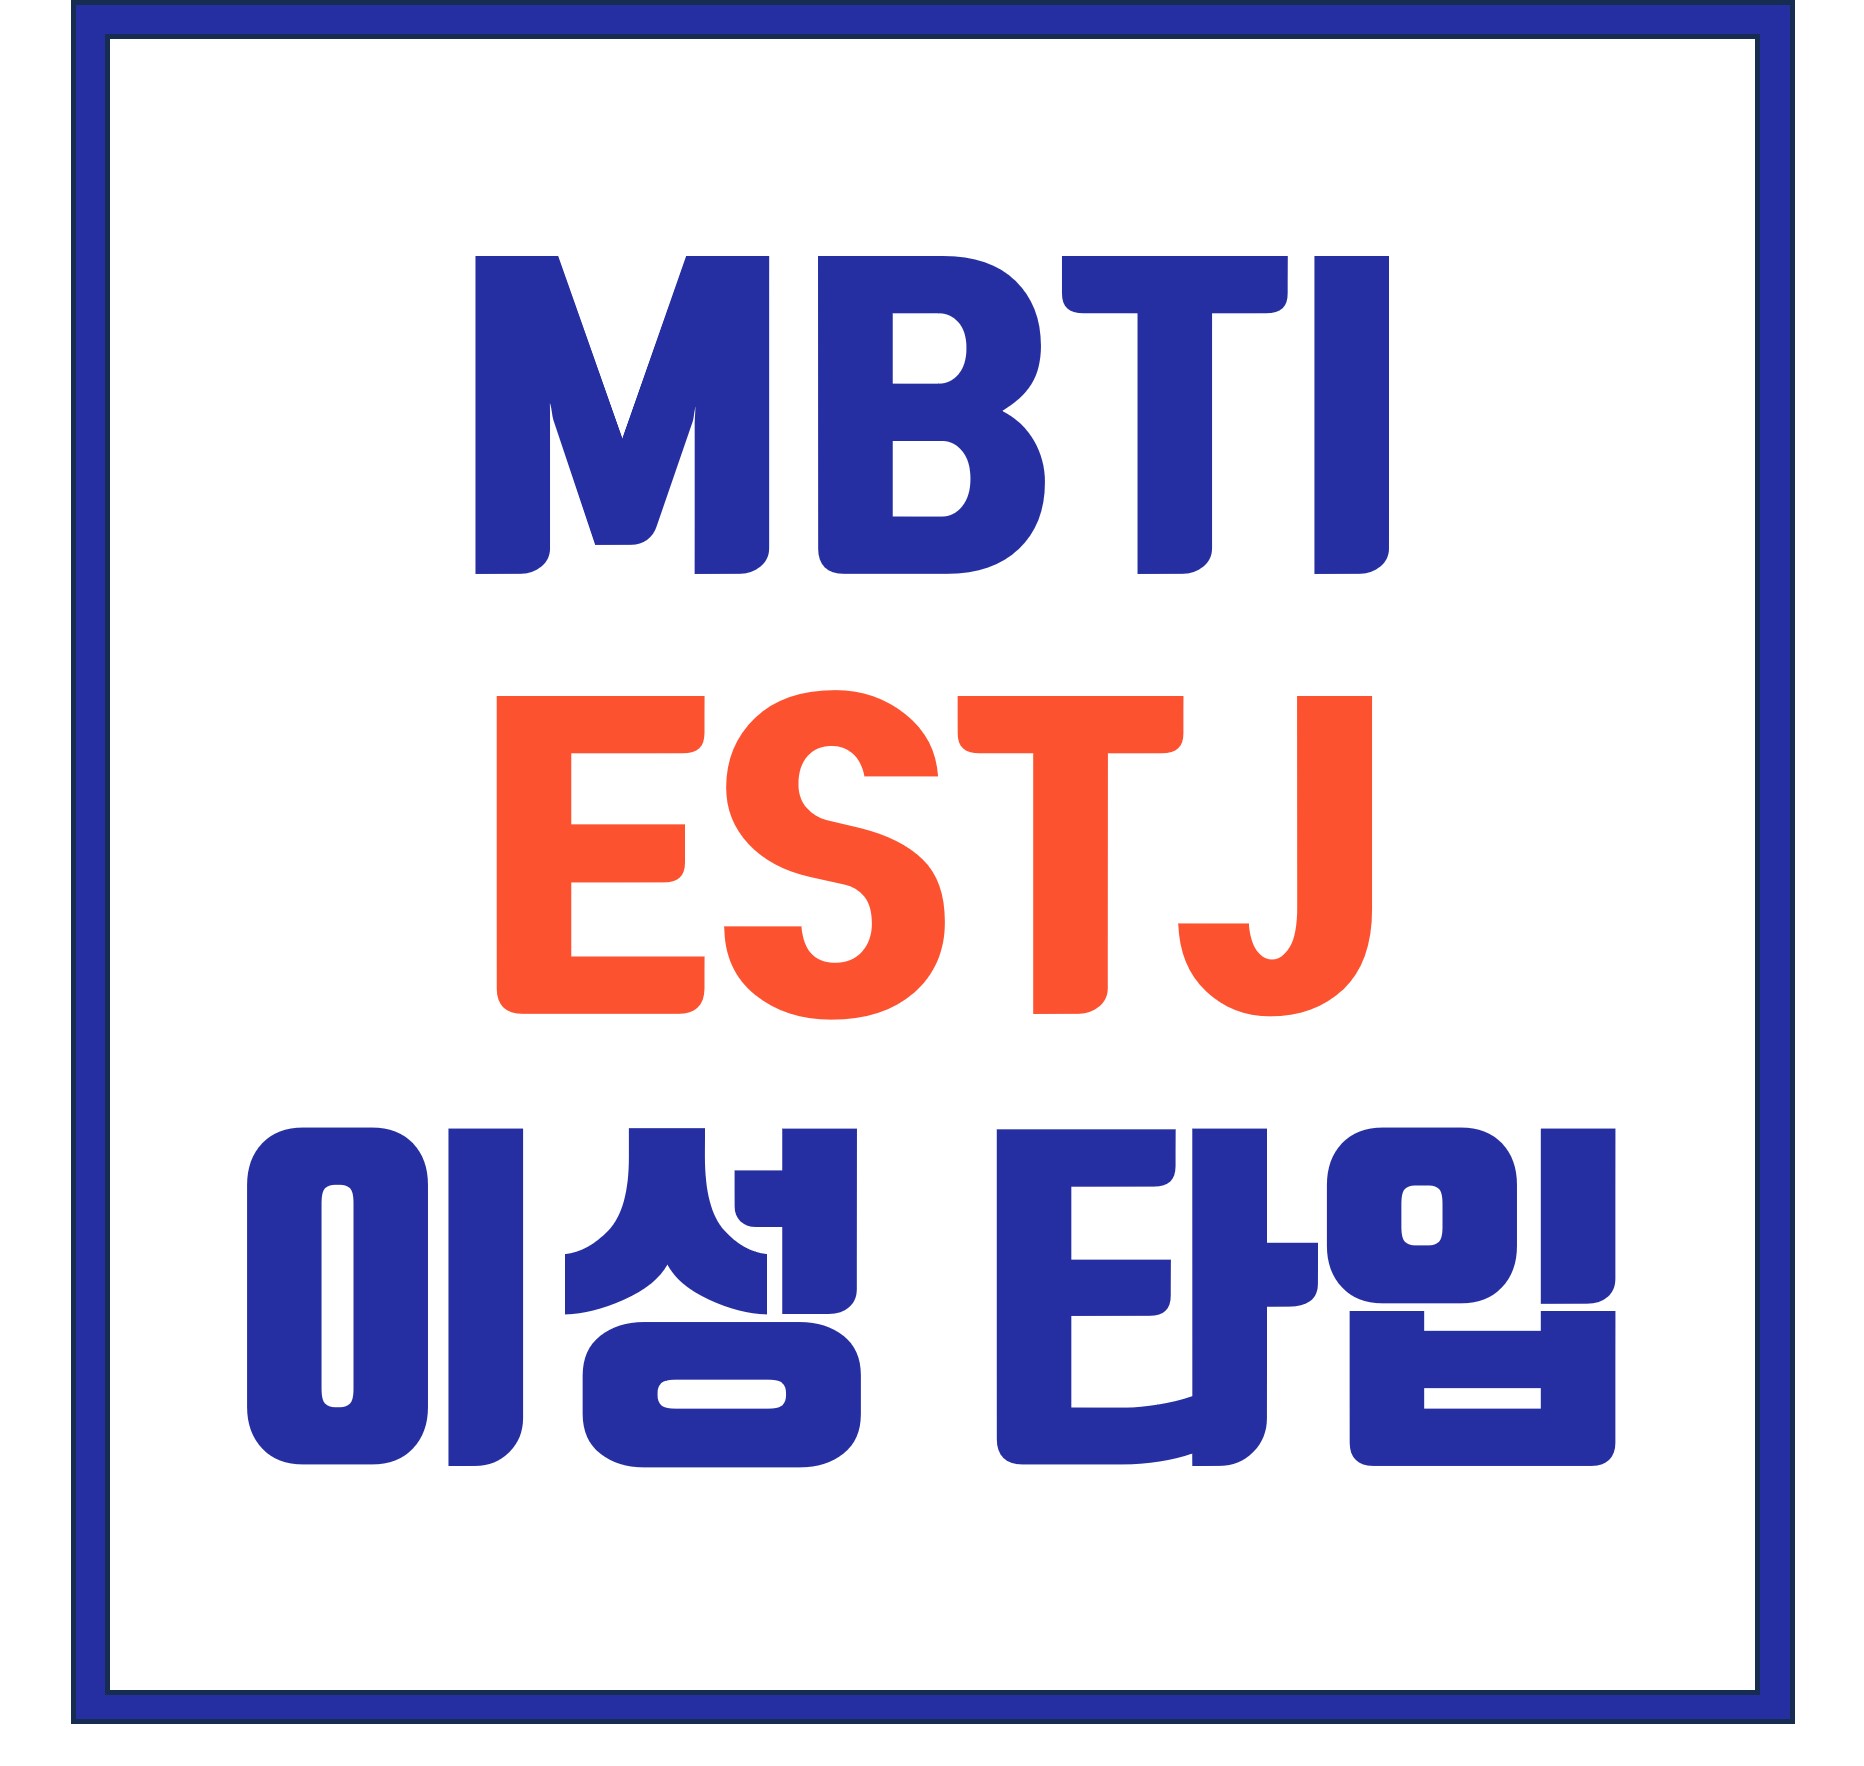 MBTI ESTJ 이상적인 이성 타입 총정리